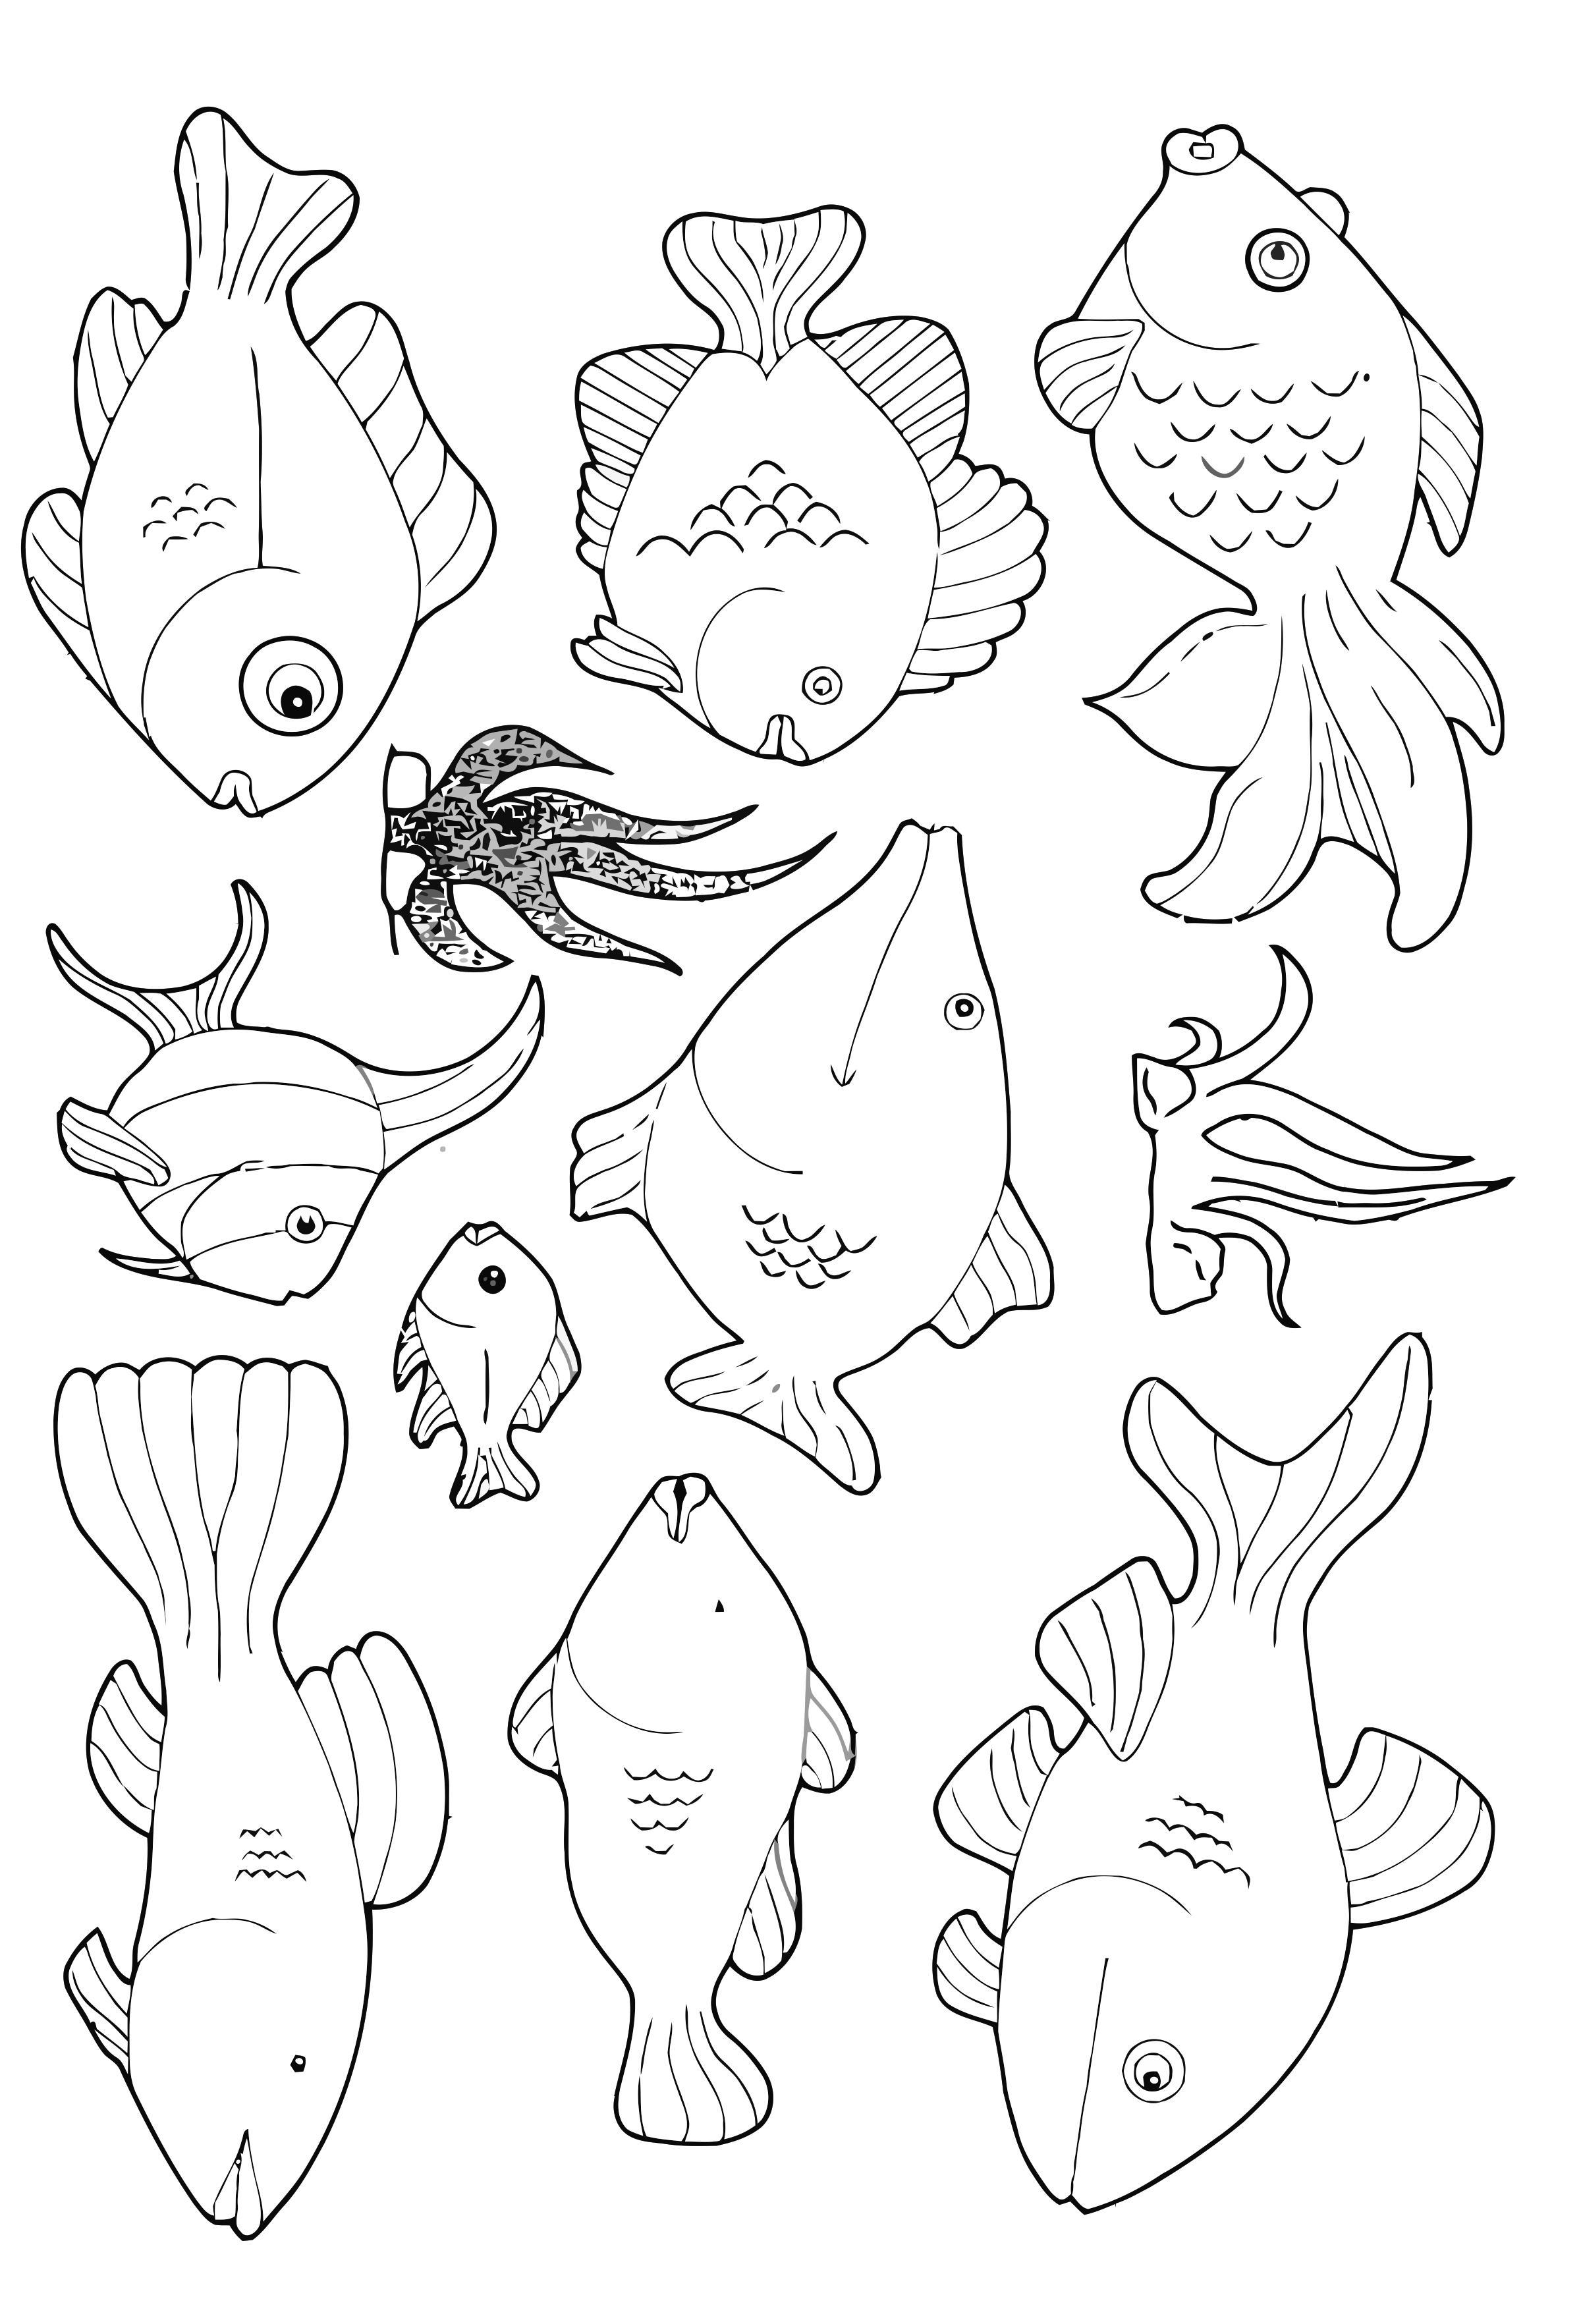 Dibujo para colorear muchos peces nadando alrededor